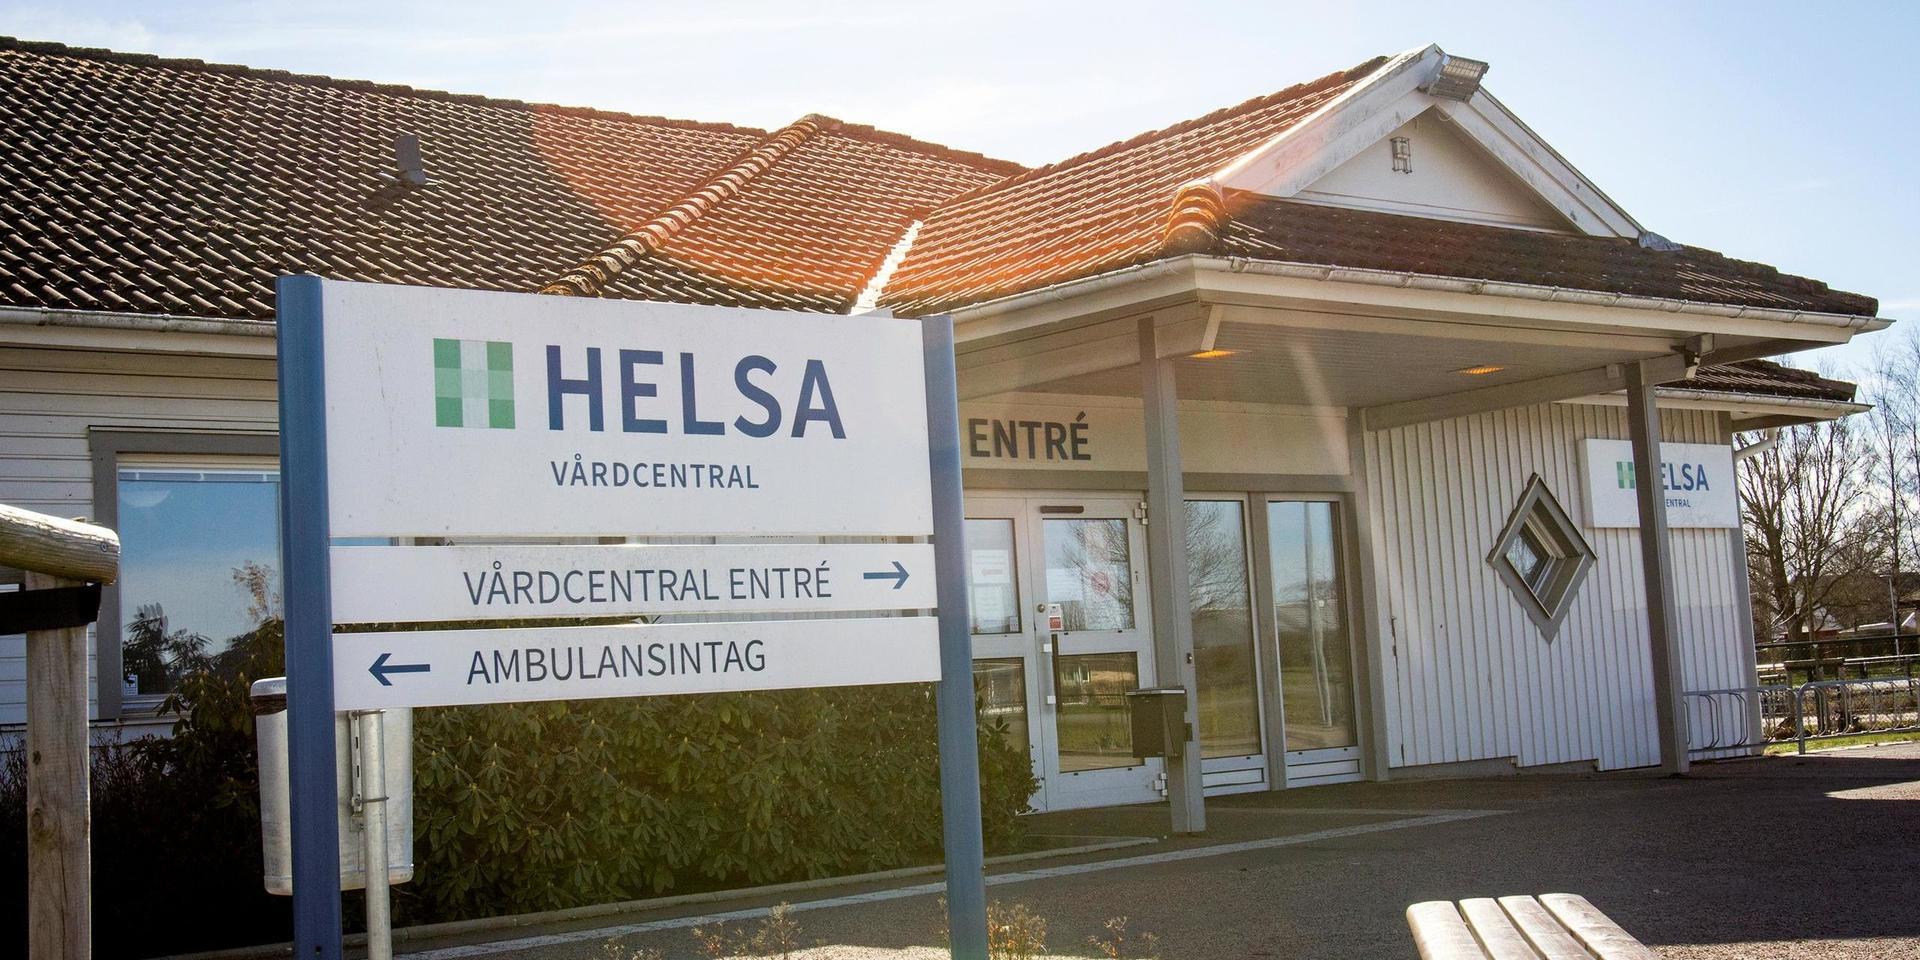 Helsas vårdcentral på Glänninge sjunger på sista versen. Efter 30 juni lämnar vårdbolaget lokalerna. 